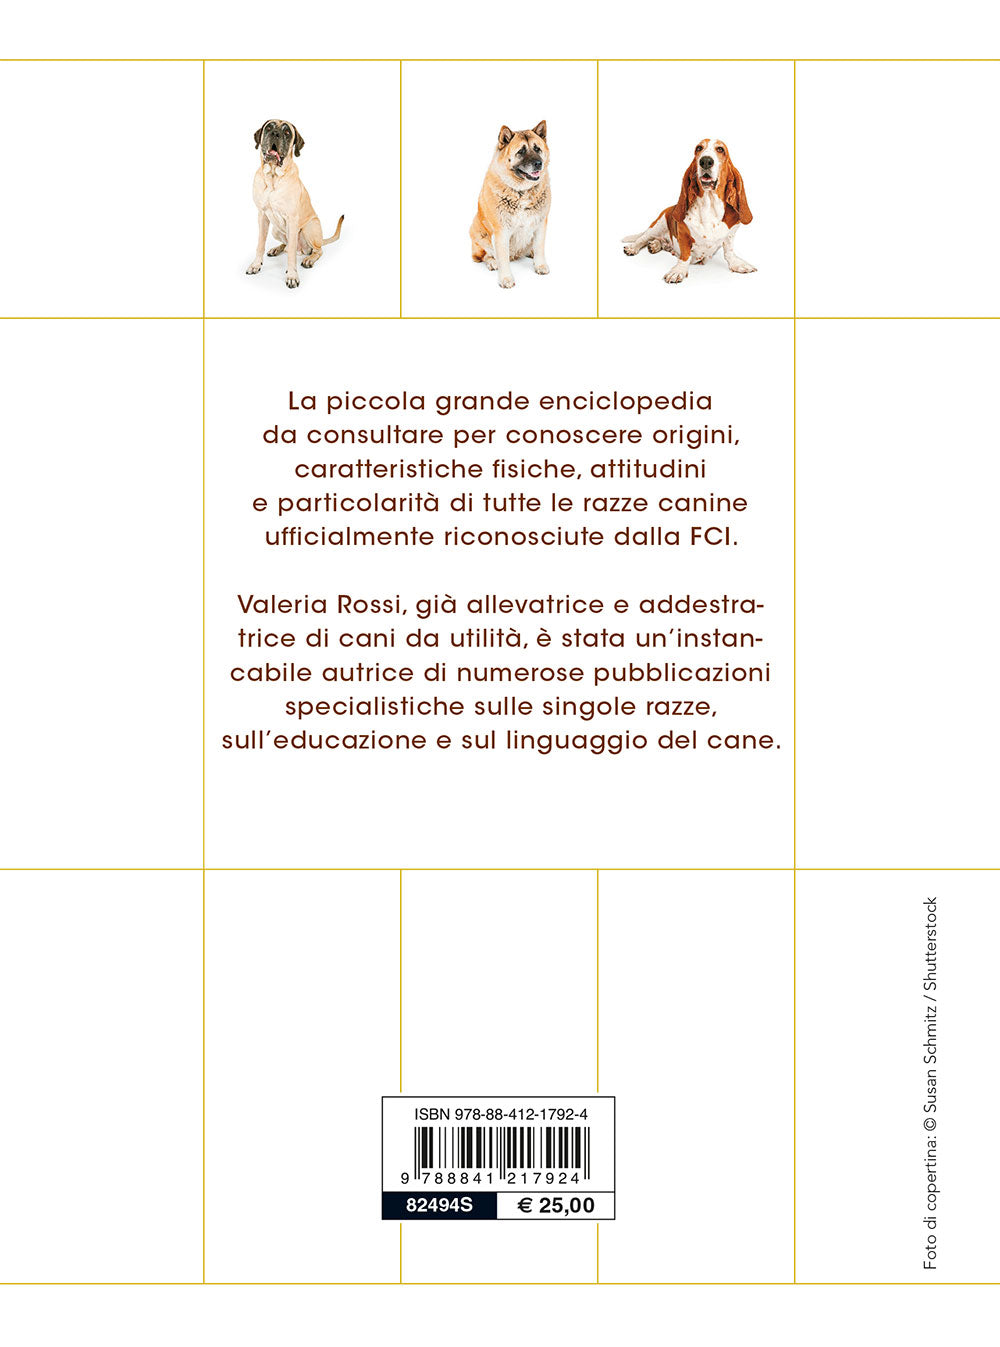 342 cani di di razza ::caratteristiche fisiche e psicologiche storia • attitudini • curiosità